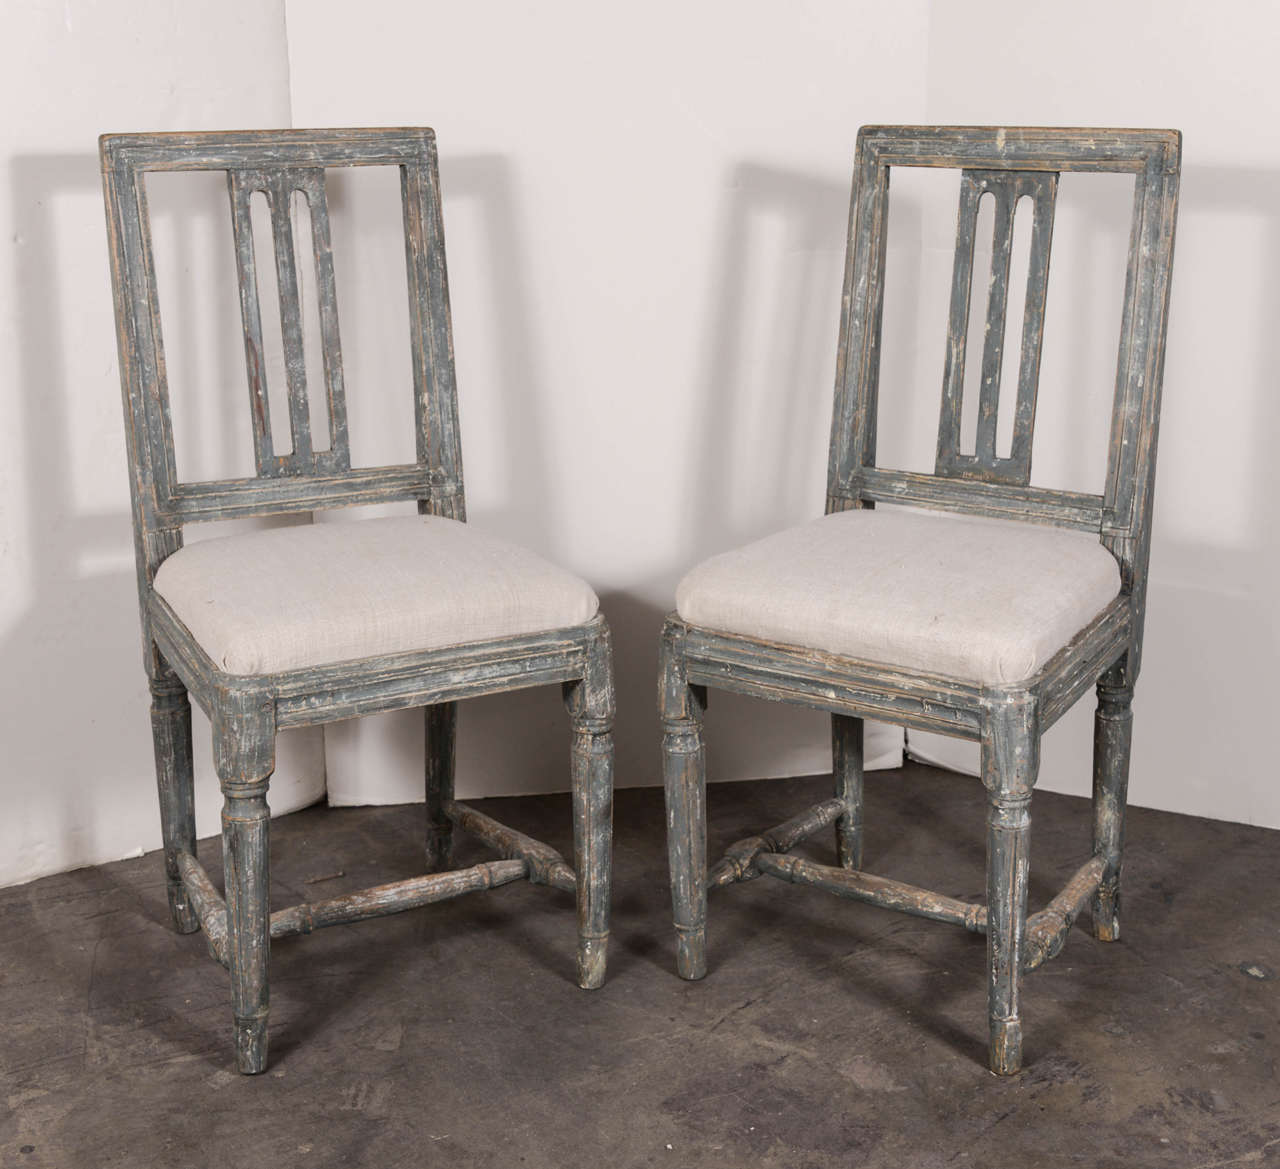 Schöner Satz von sechs schwedischen Stühlen aus der Gustavianischen Epoche mit originaler blauer Farbe und neu gepolsterten Sitzen aus altem Leinen.